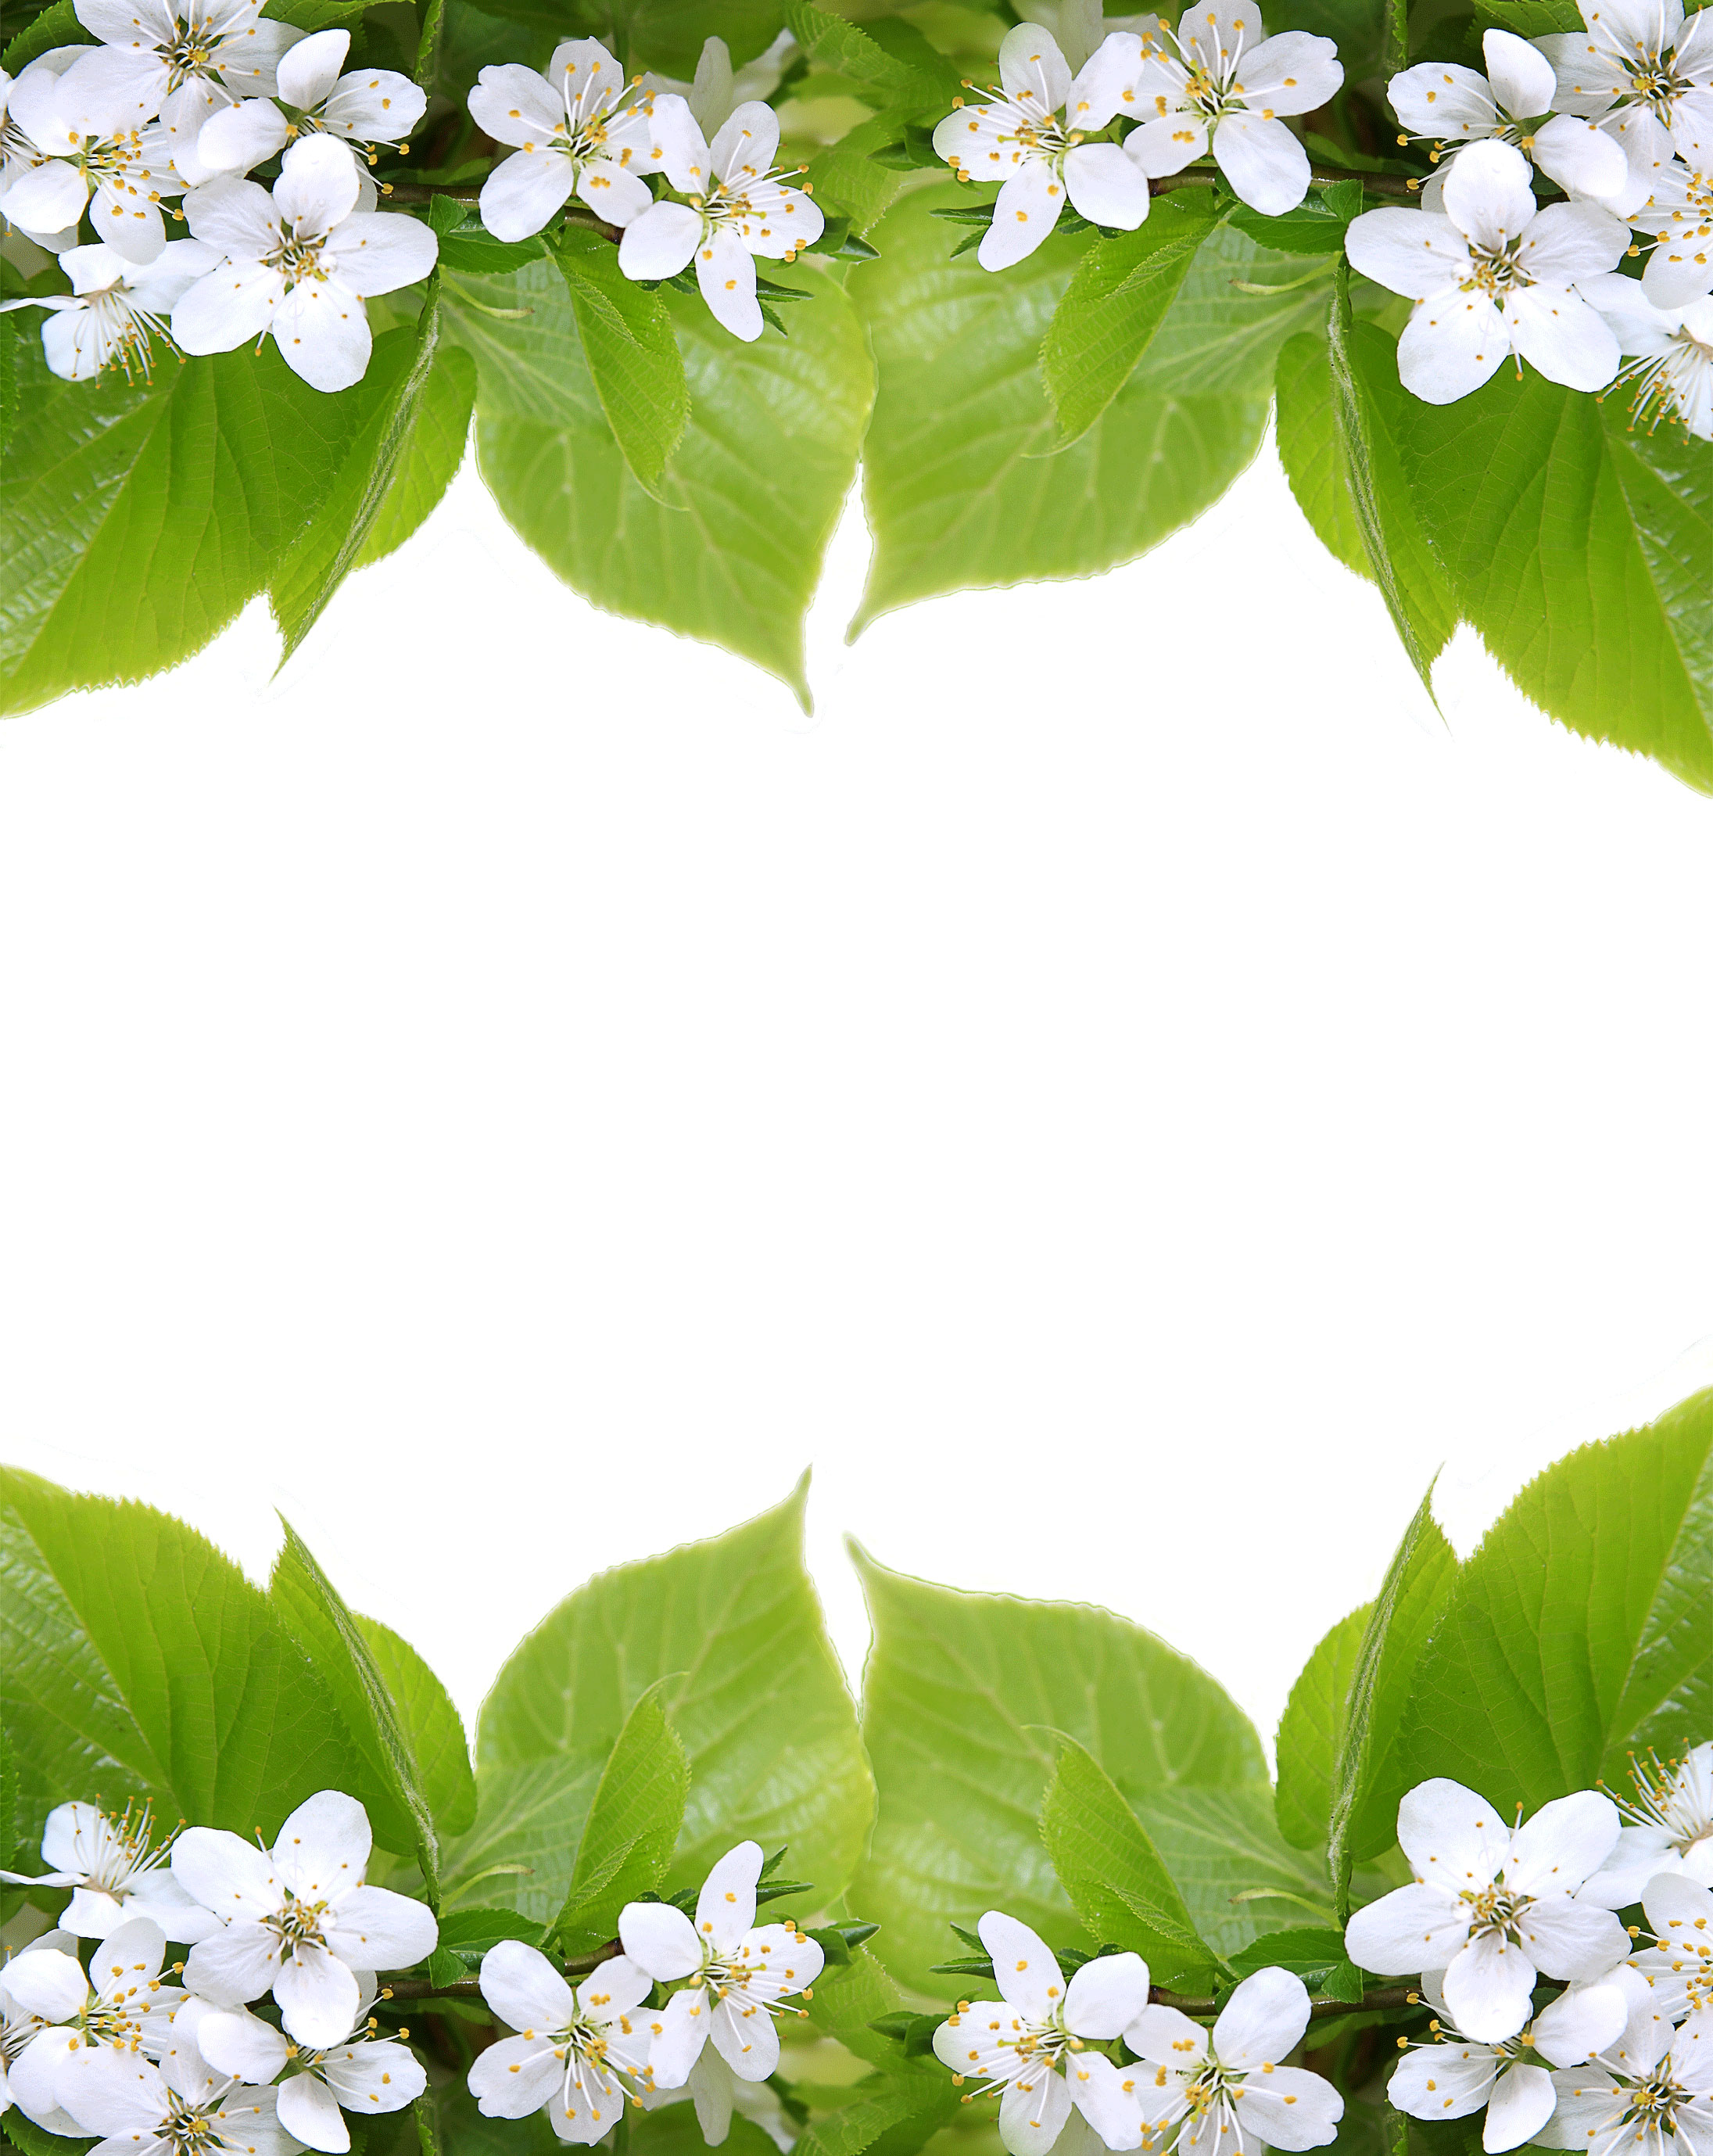 白い花の写真 フリー素材 No 584 白い花と葉